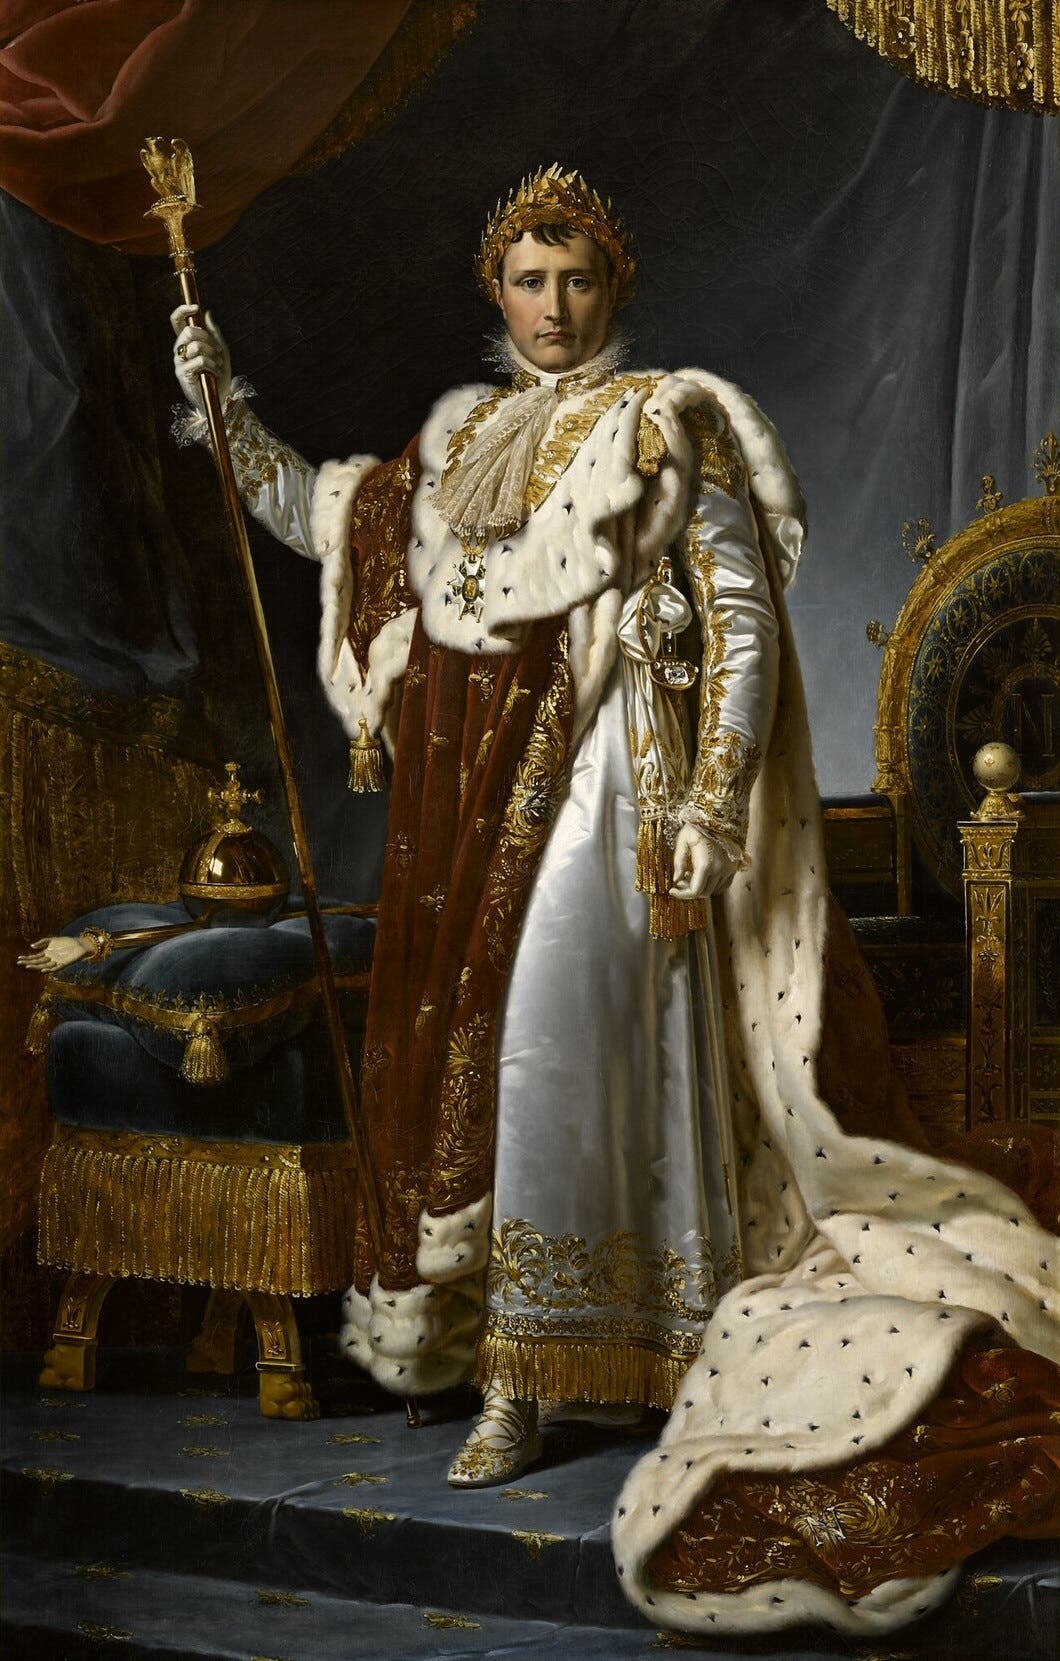 لوحة زيتية تعود لعام 1805 تجسد نابليون بونابرت